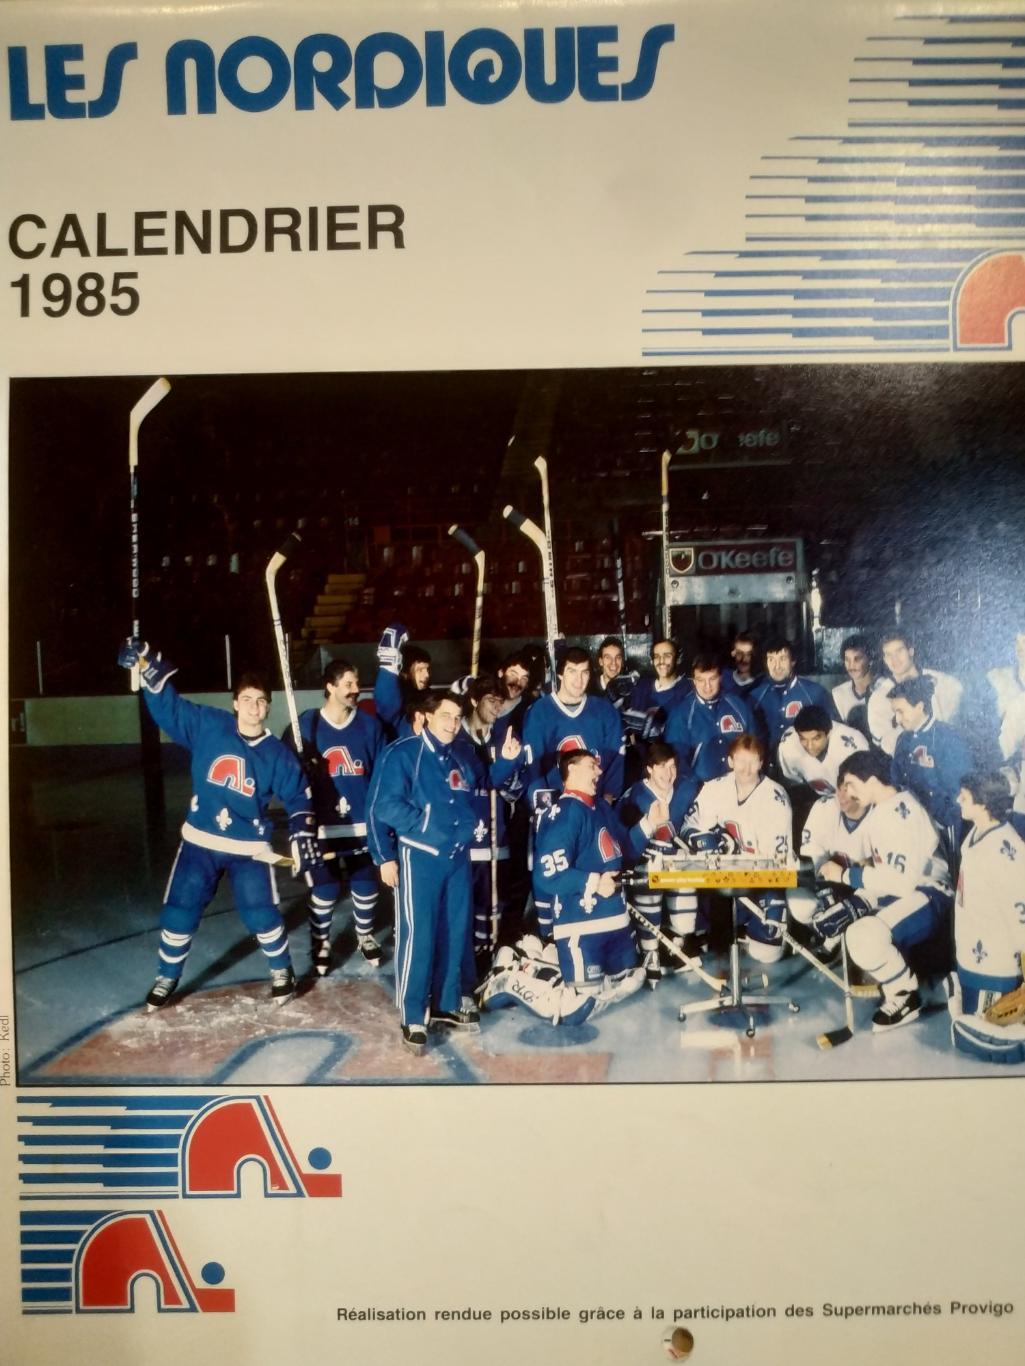 ХОККЕЙ КАЛЕНДАРЬ НХЛ КВЕБЕК НОРДИКС 1985 NHL LES NORDIQUES OFFICIAL CALENDAR